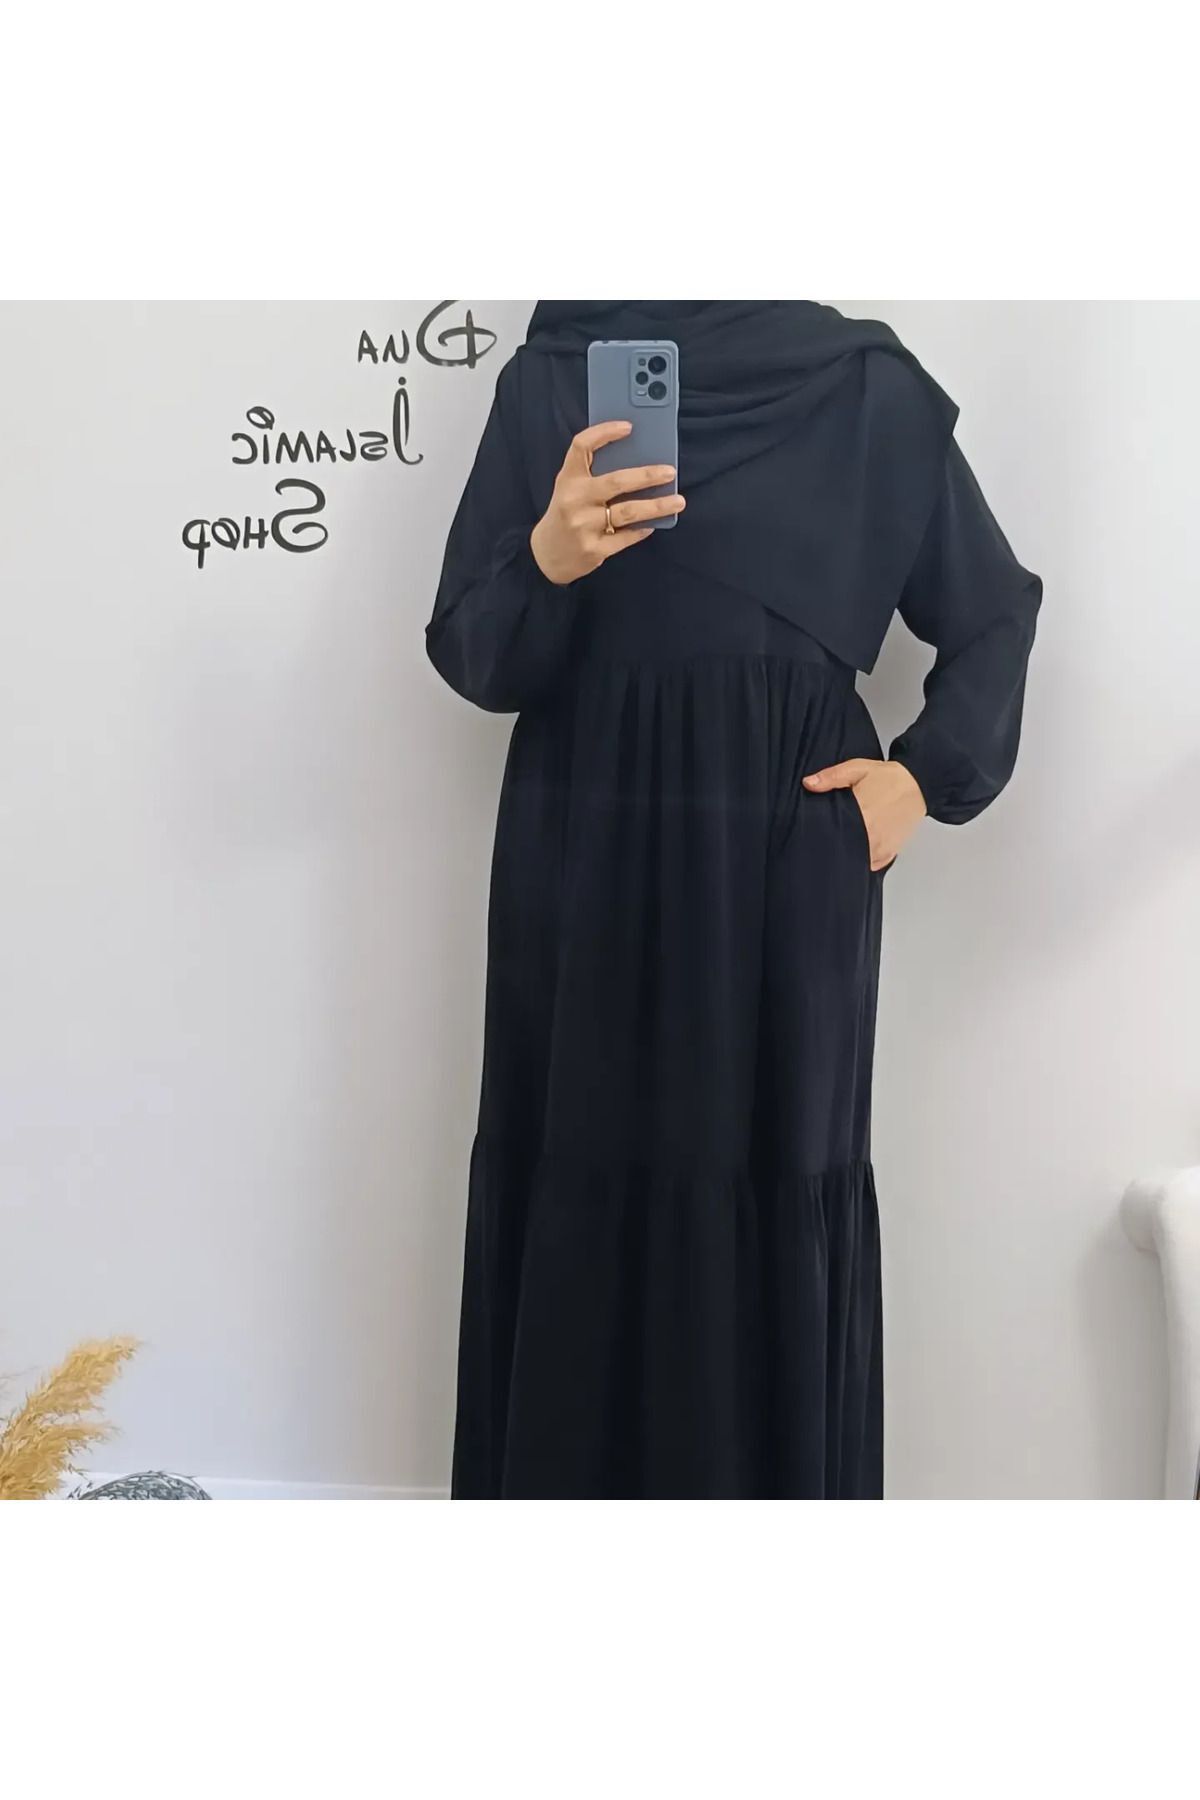 dua' is 1. Kalite Medine Ipeği Şal Jilbab Elbise Takımıı